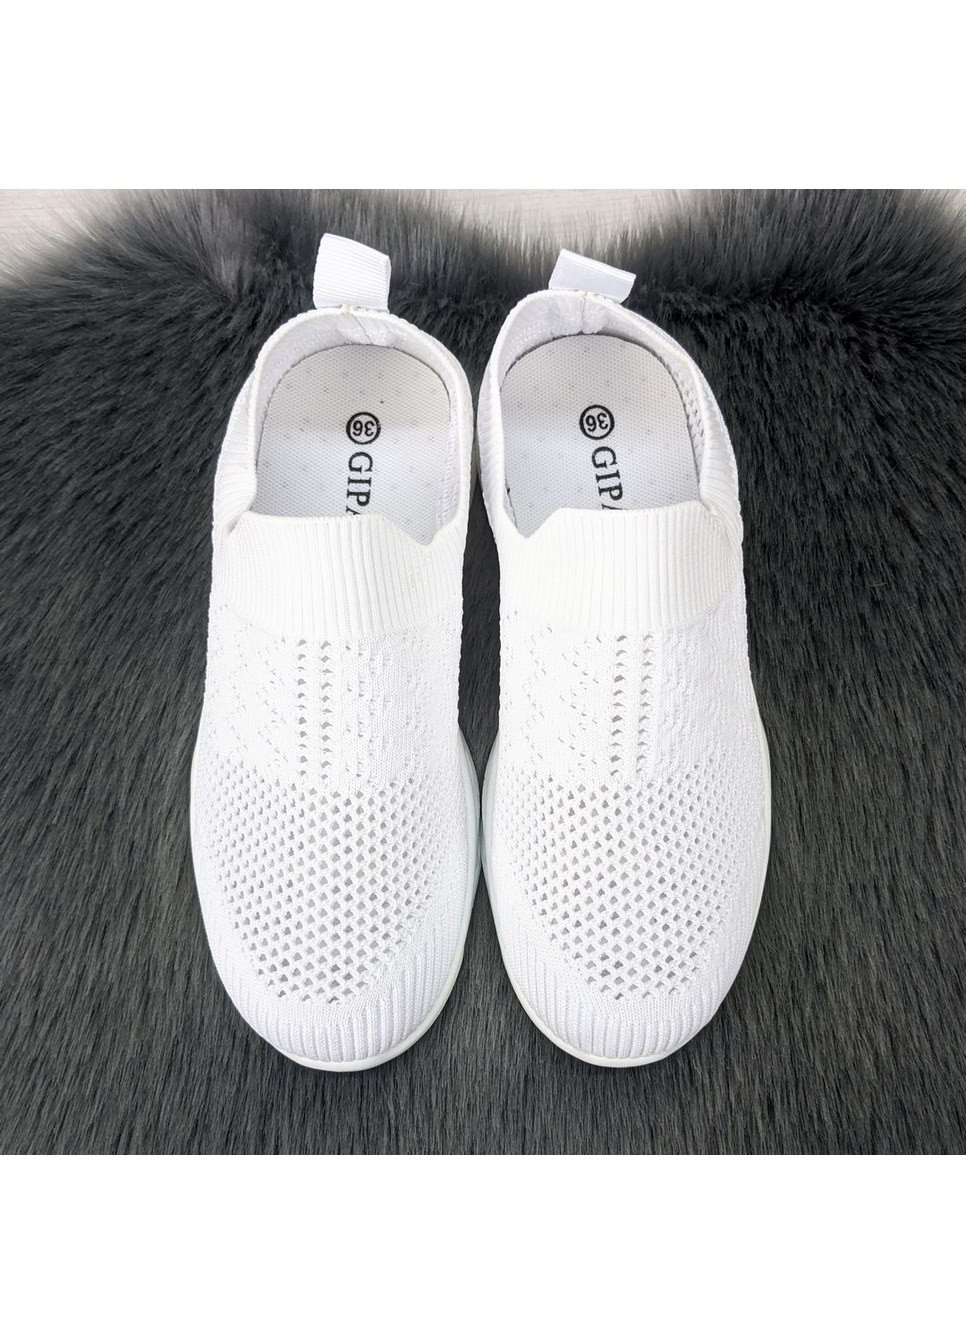 Білі осінні кросівки жіночі текстильні з перфорацією Gipanis